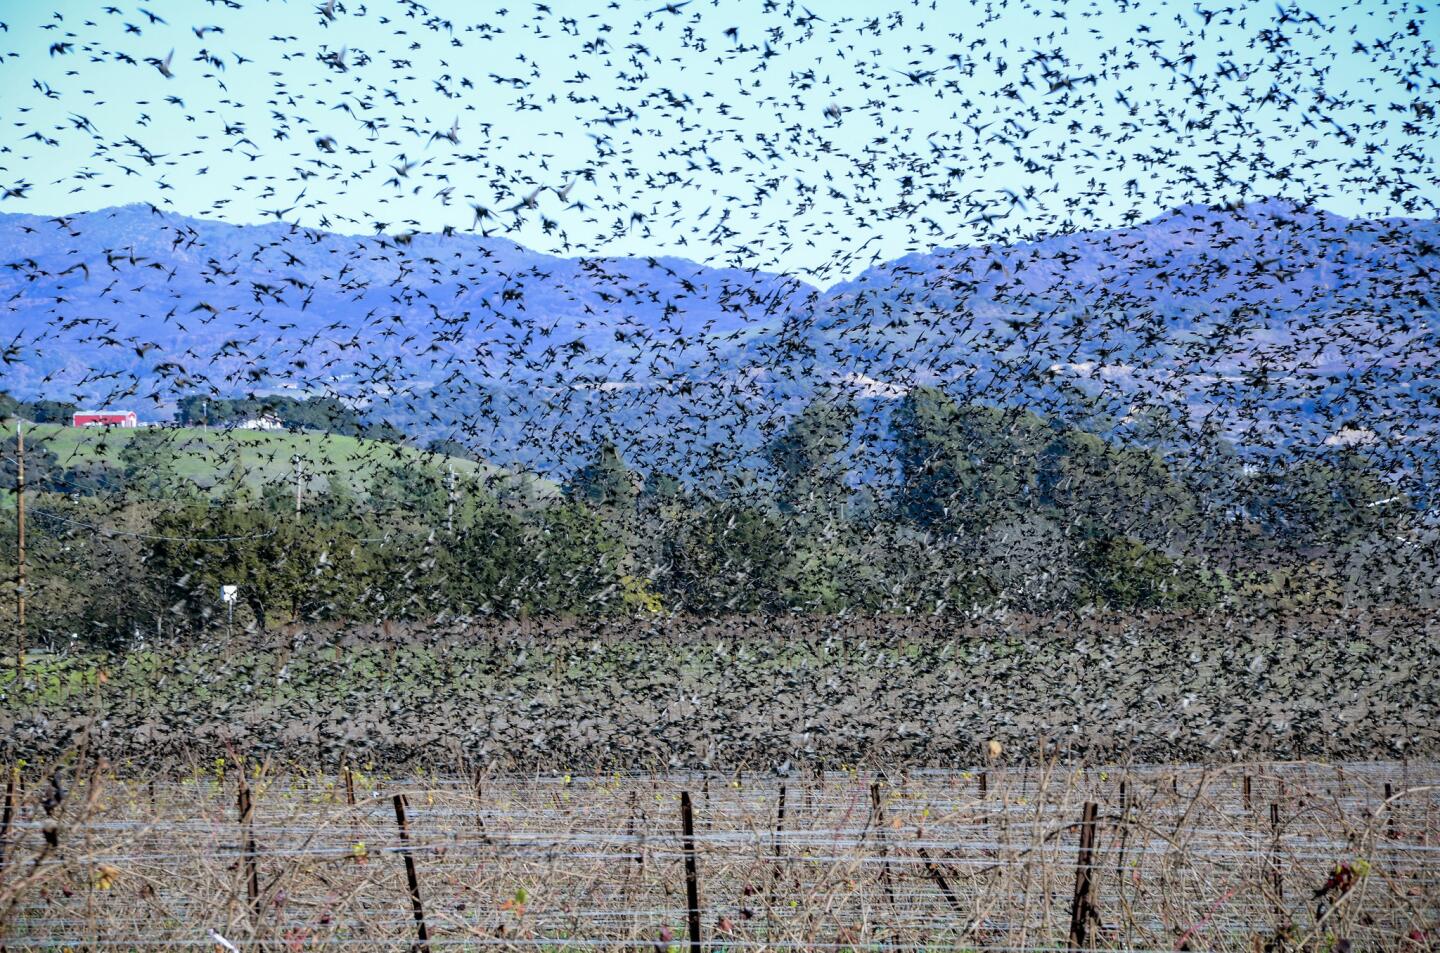 Starlings in Napa-Sonoma